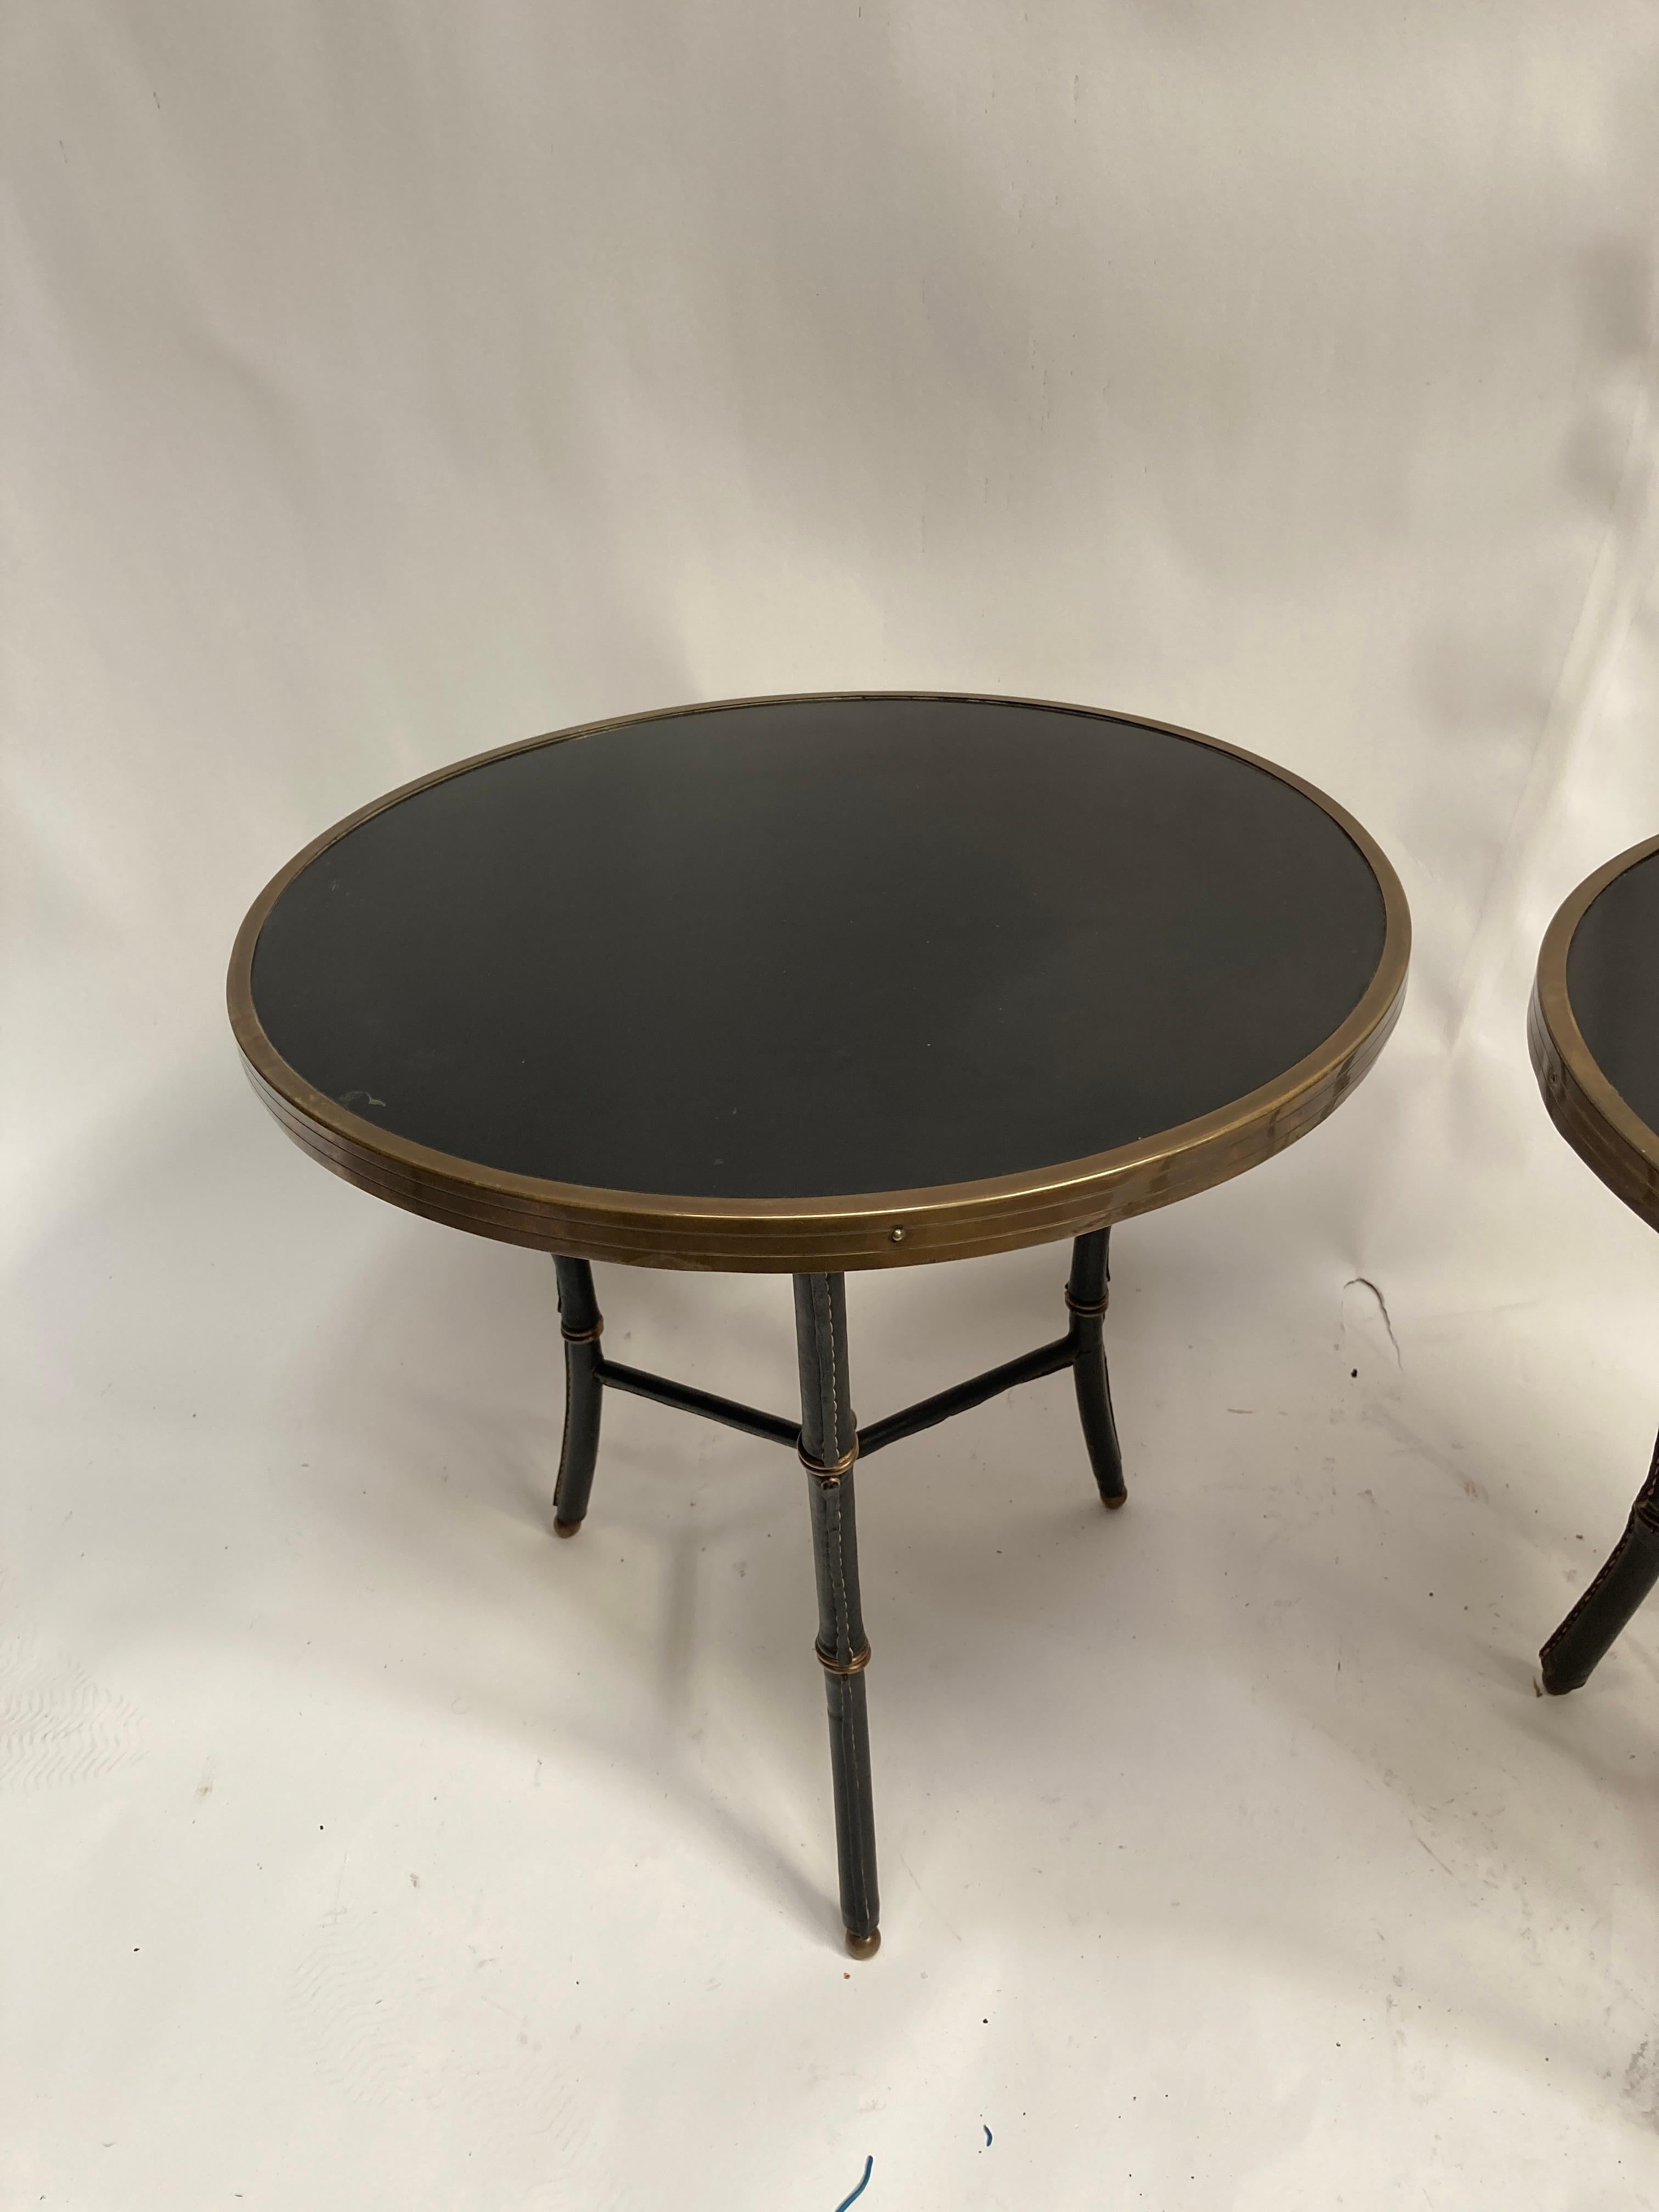 Paire de tables d'appoint en cuir cousu des années 50 par Jacques Adnet
Dessus en formica
